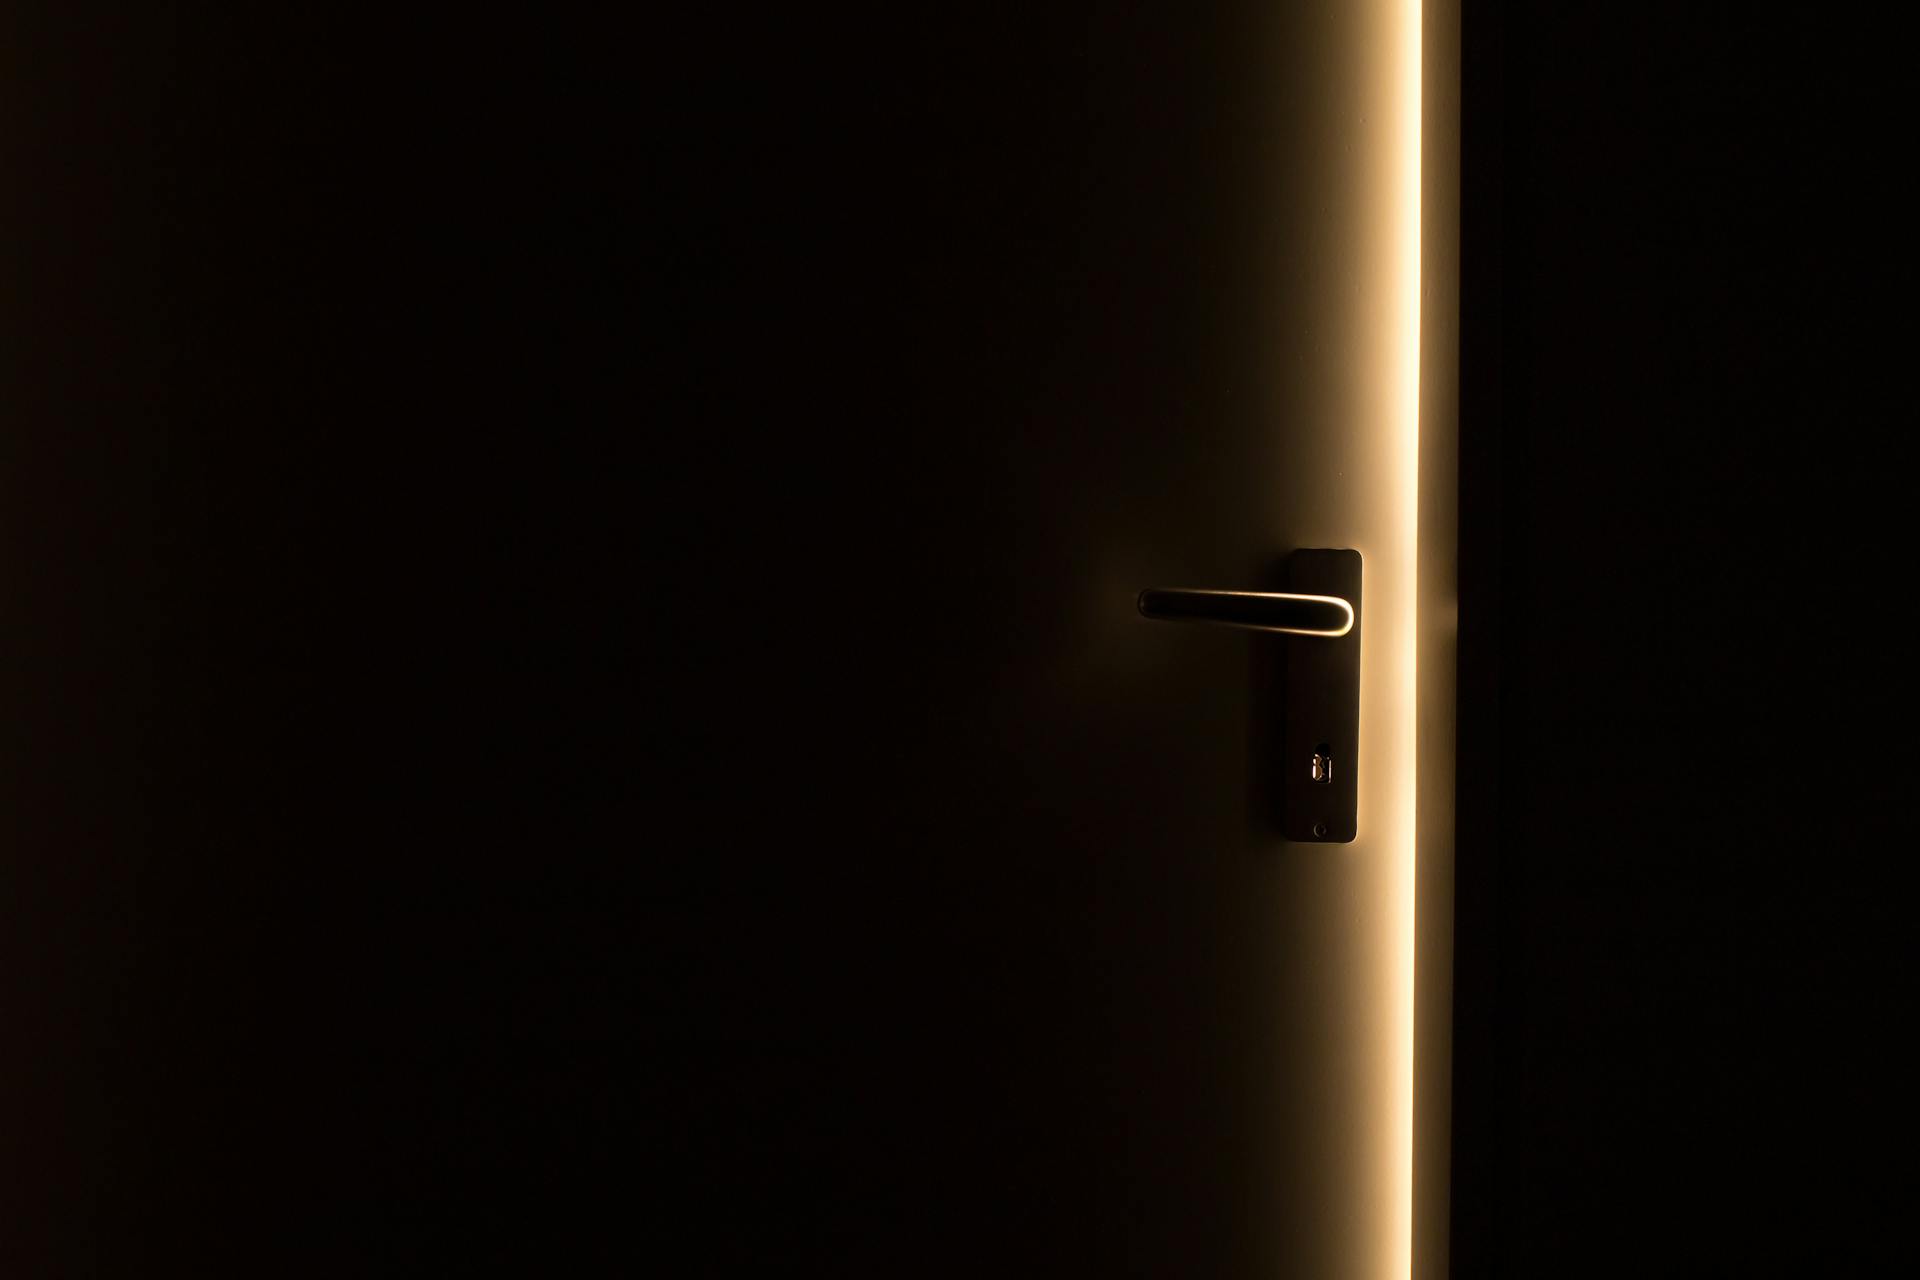 Eine leicht geöffnete Tür, durch die Licht hereinströmt | Quelle: Pexels